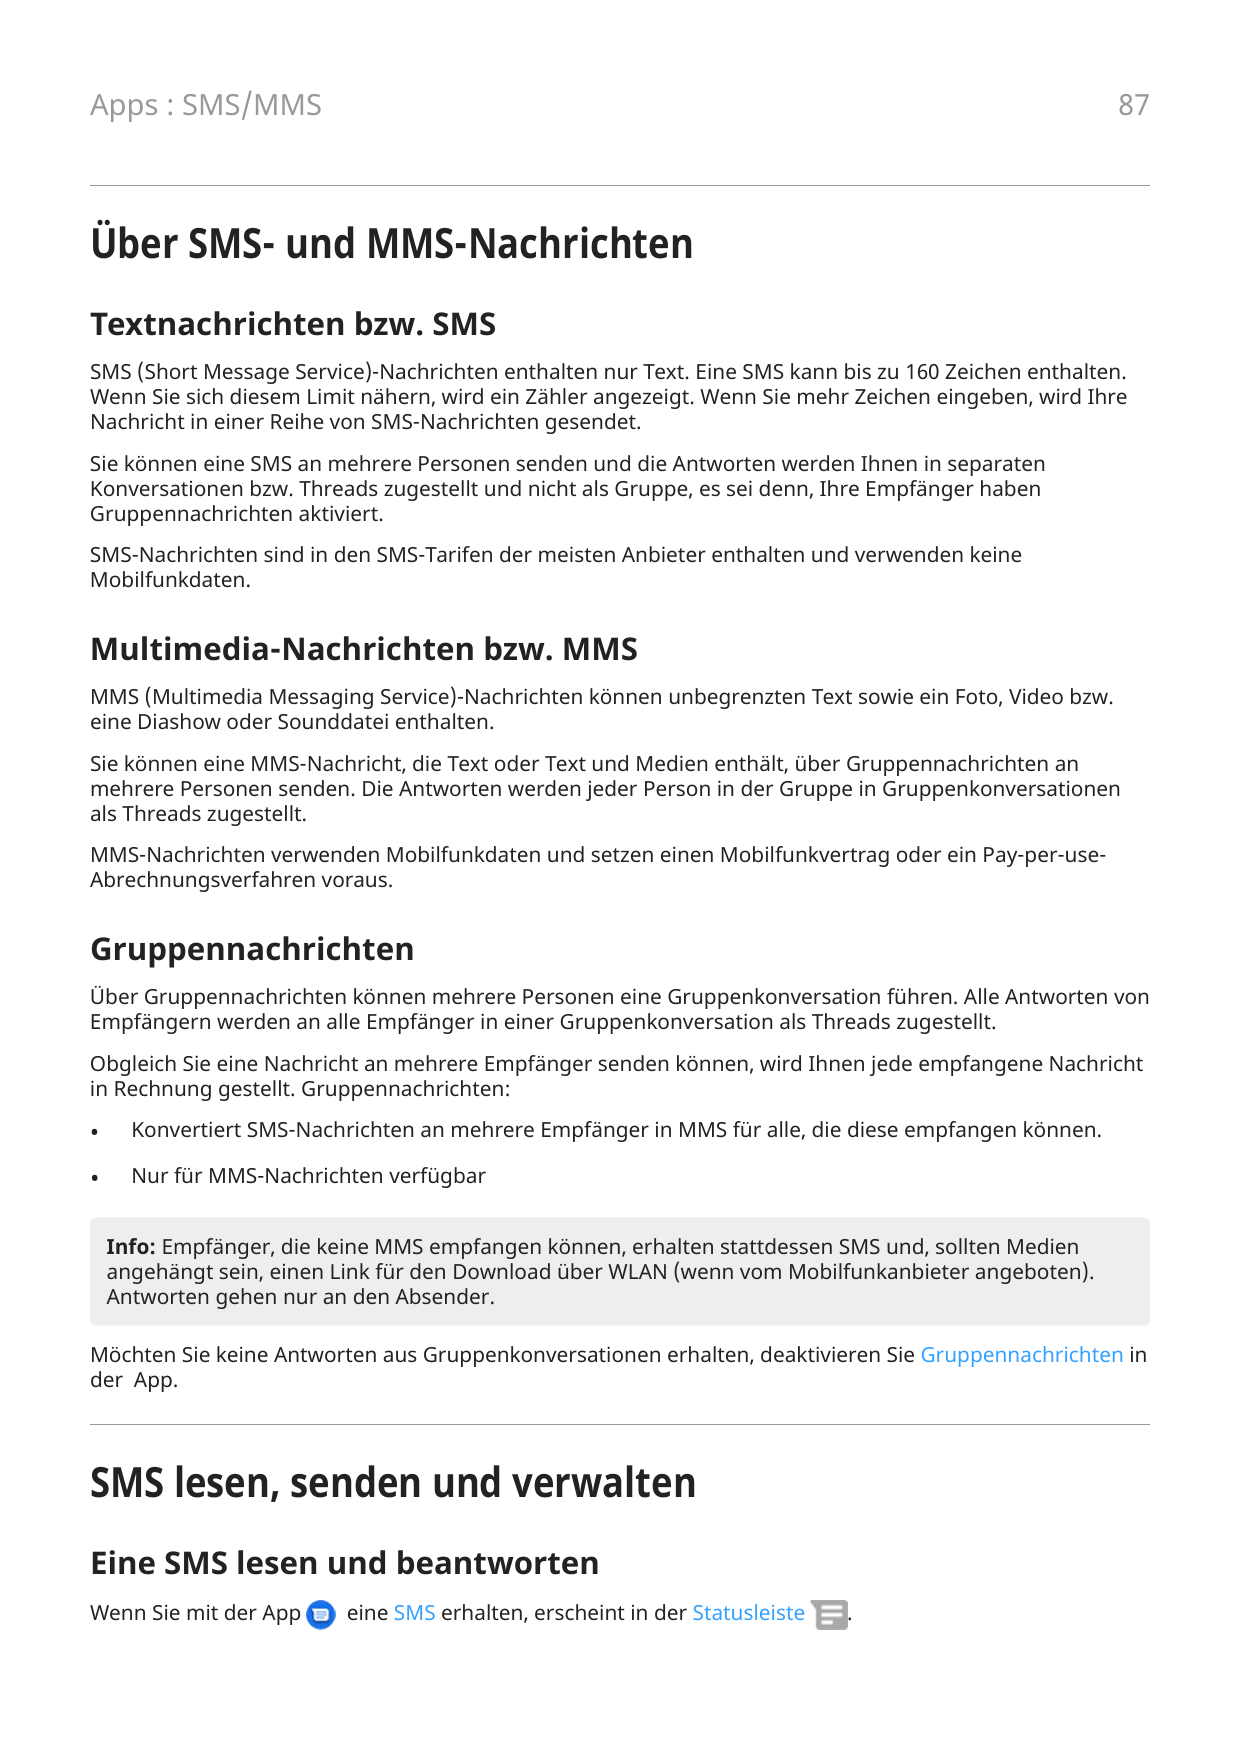 87Apps : SMS/MMSÜber SMS- und MMS-NachrichtenTextnachrichten bzw. SMSSMS (Short Message Service)-Nachrichten enthalten nur Text.